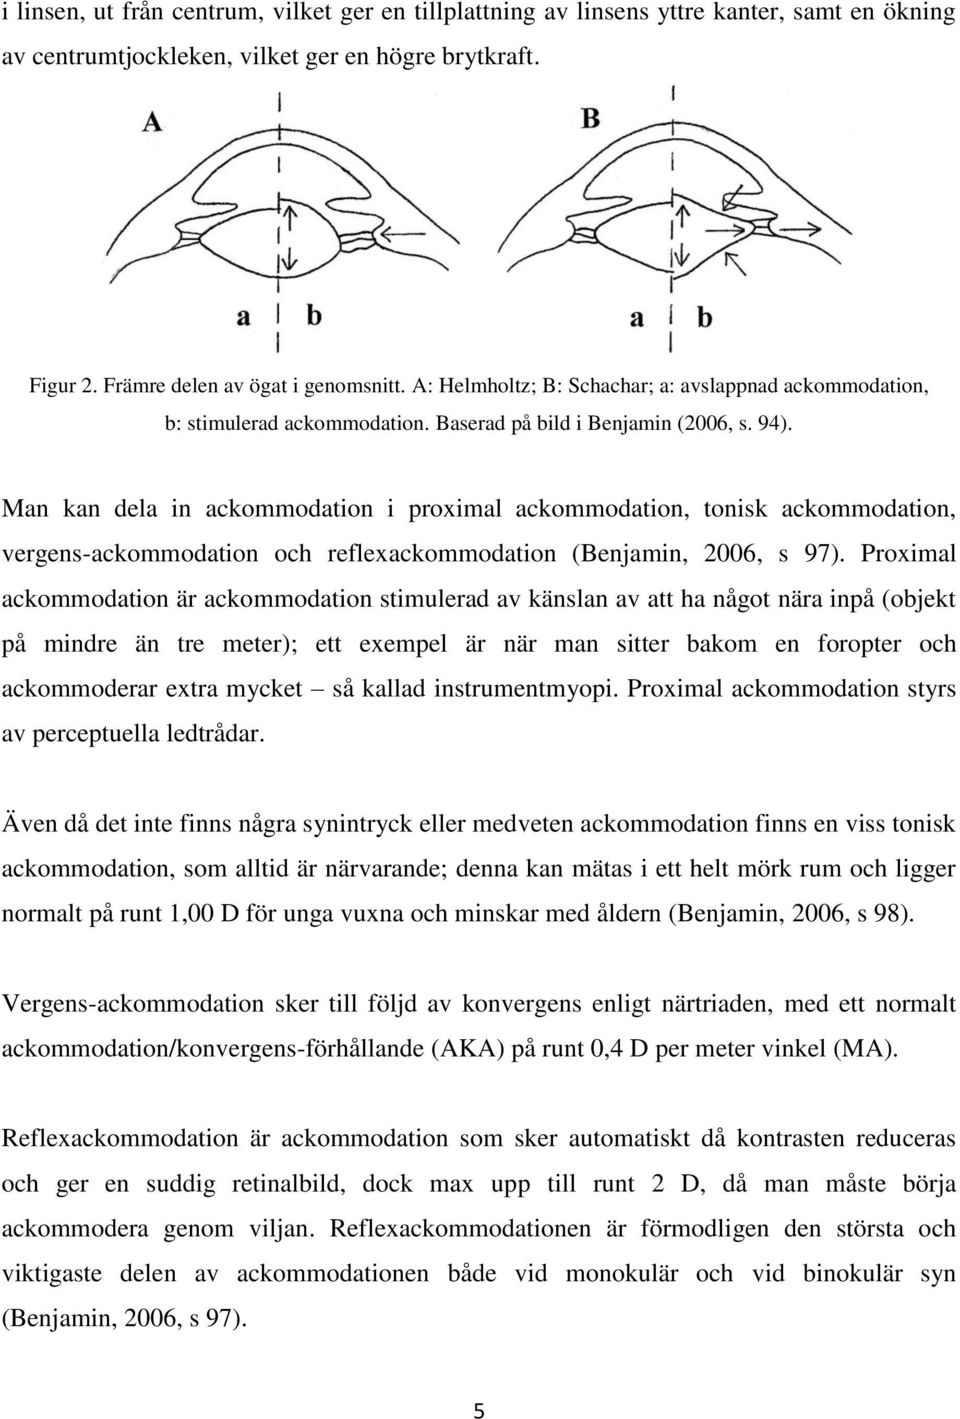 Man kan dela in ackommodation i proximal ackommodation, tonisk ackommodation, vergens-ackommodation och reflexackommodation (Benjamin, 2006, s 97).